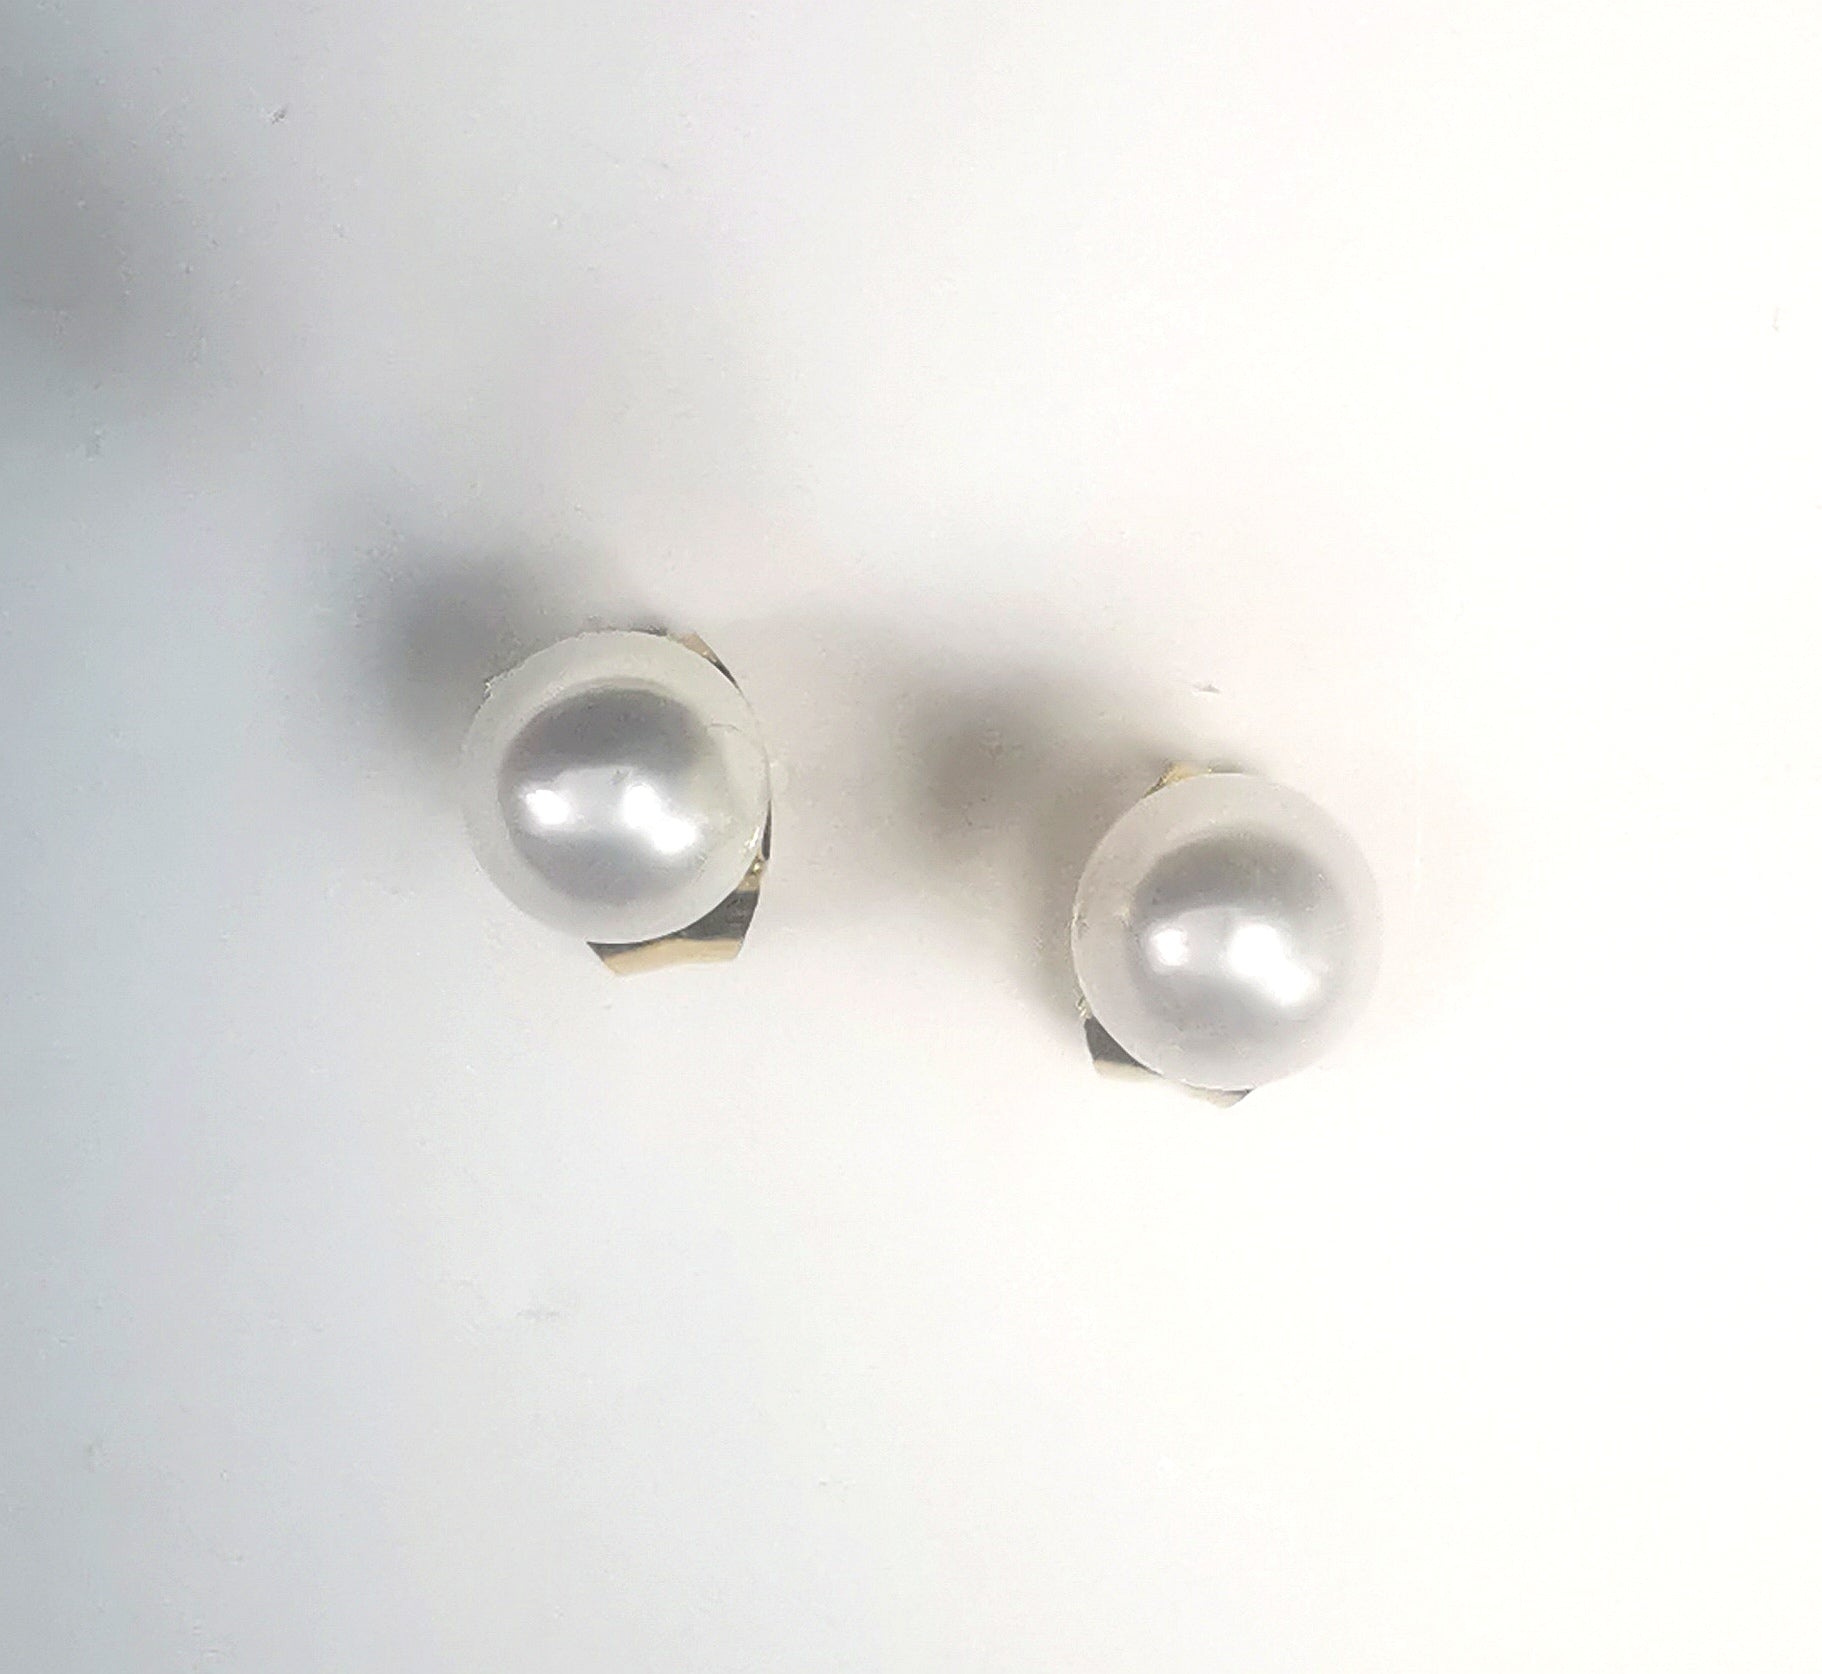 Boucles d'oreilles perles de culture blanches rondes 5mm montées sur clous plaqués or. Présentées platées sur un support blanc, l'une a coté de l'autre. Vue de dessus.